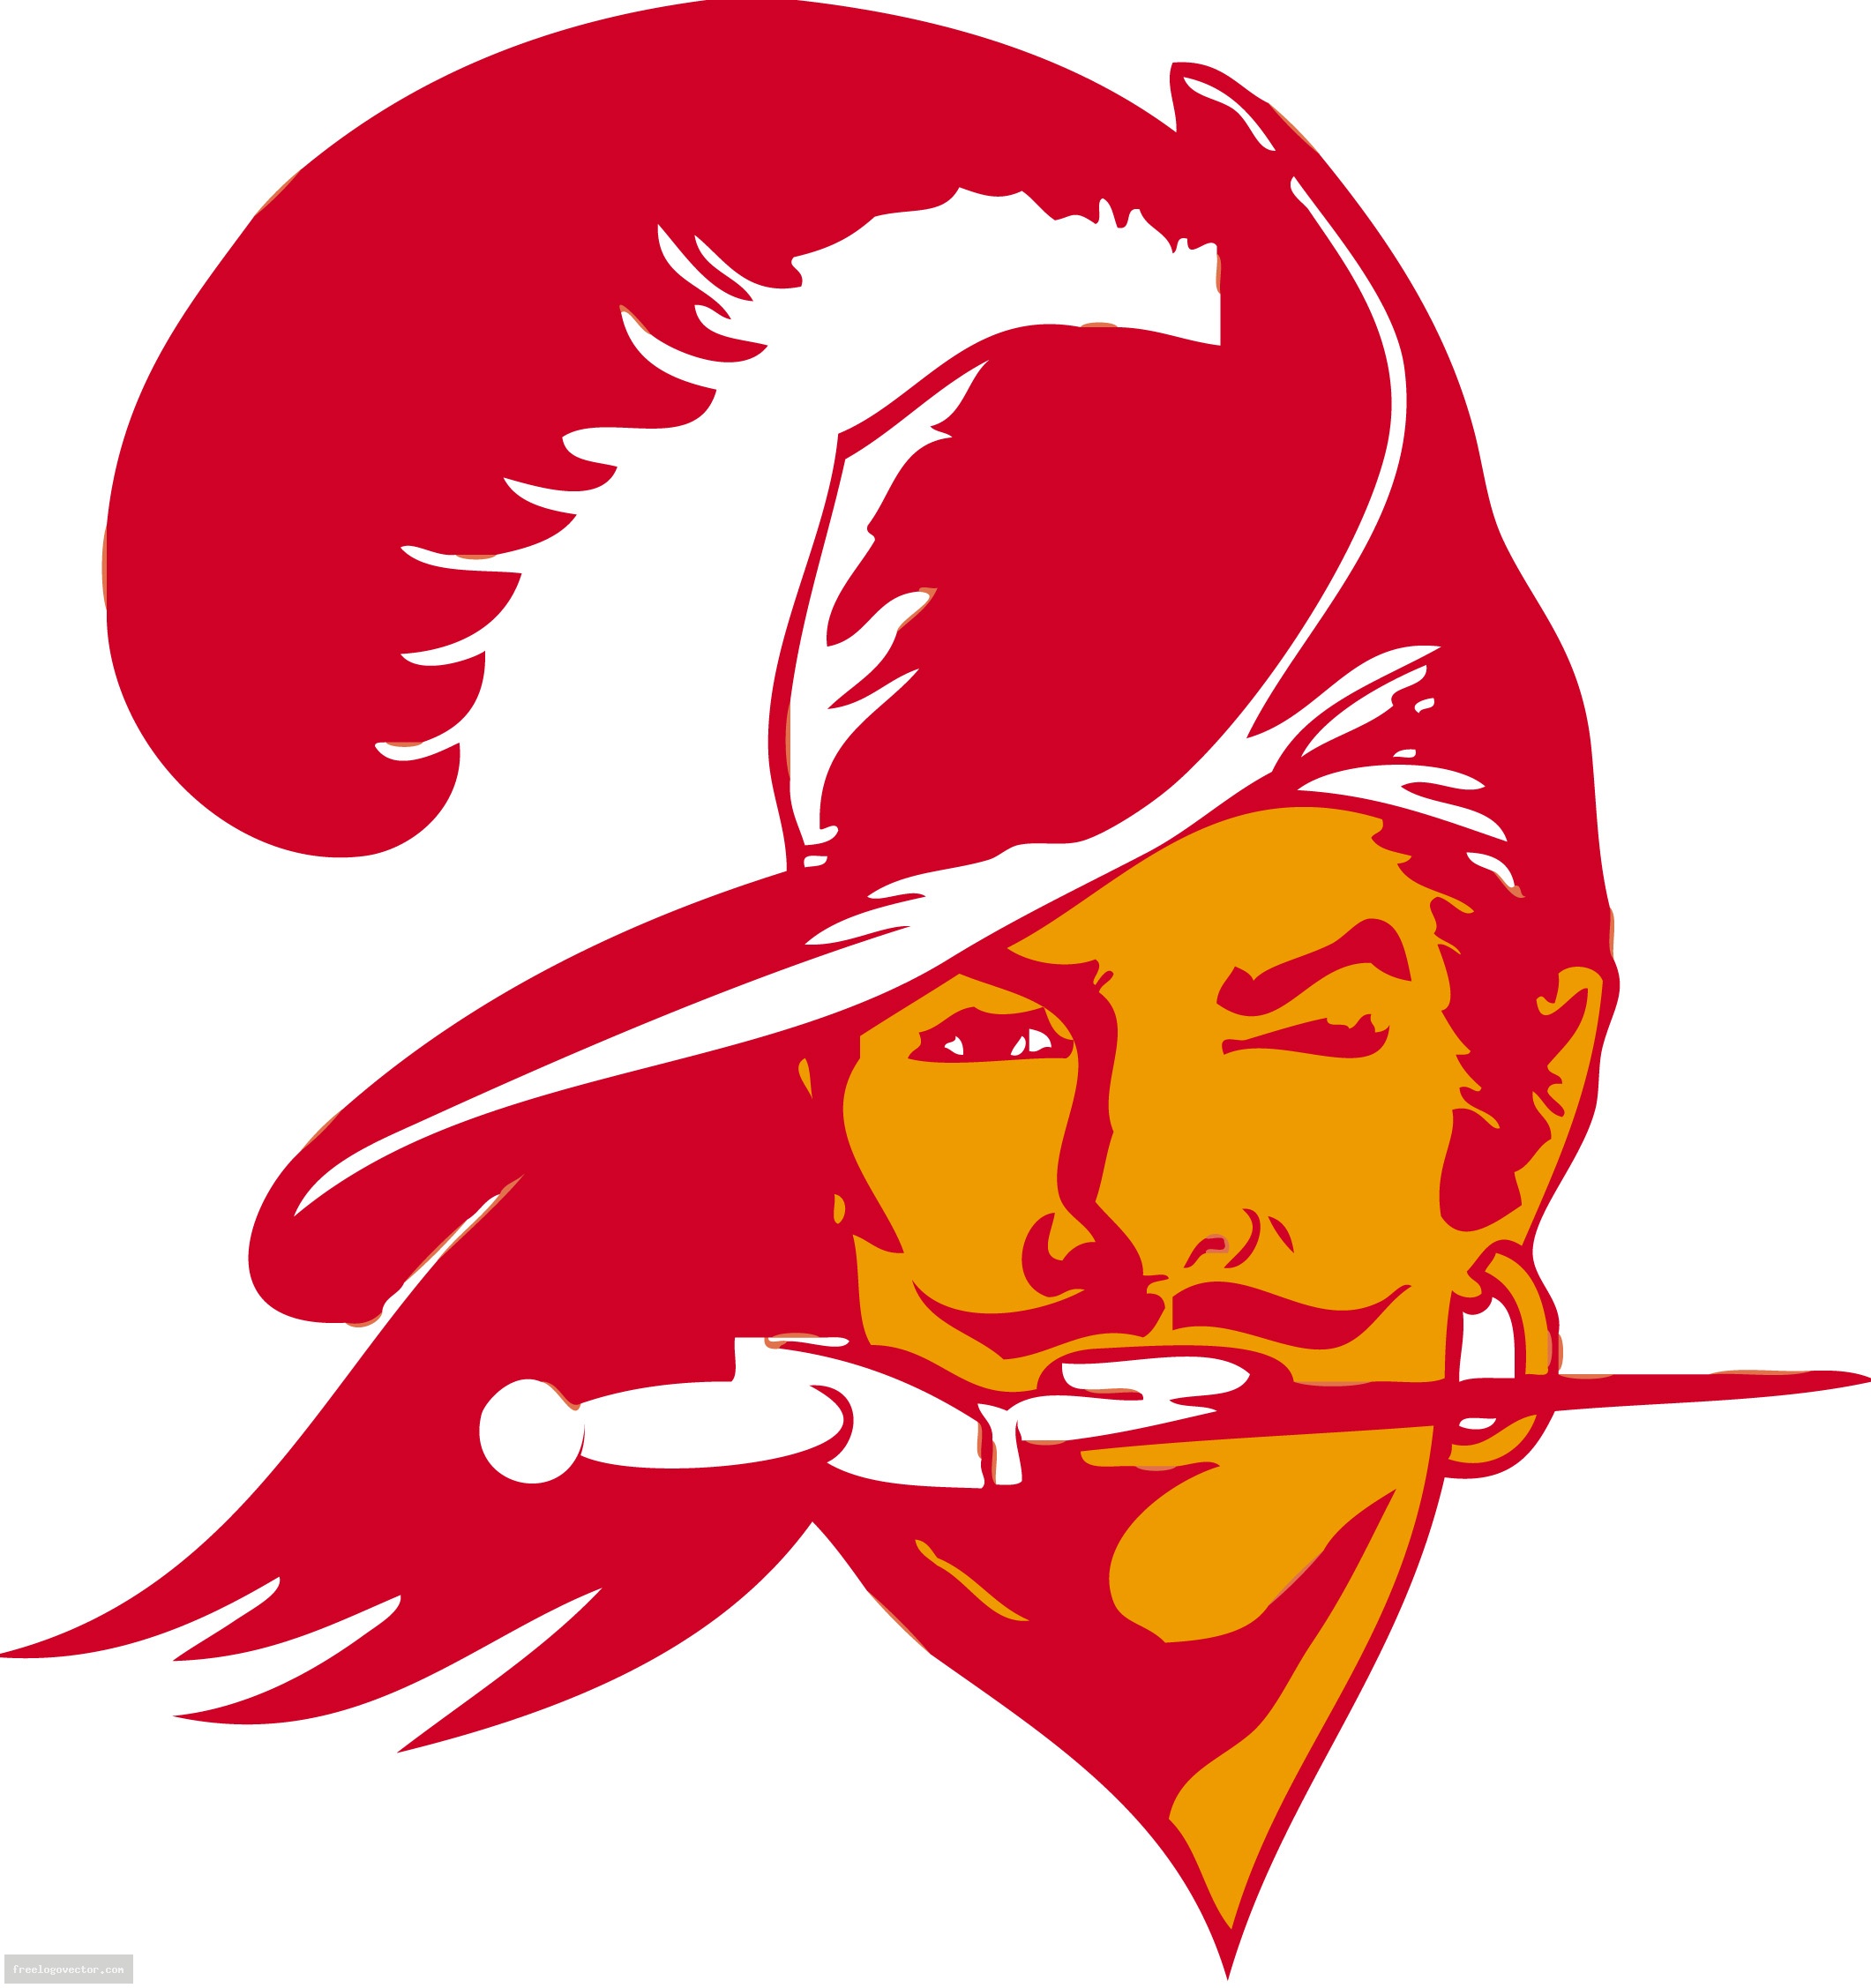 Super Bowl XIV Tampa Bay Buccaneers logo.jpg